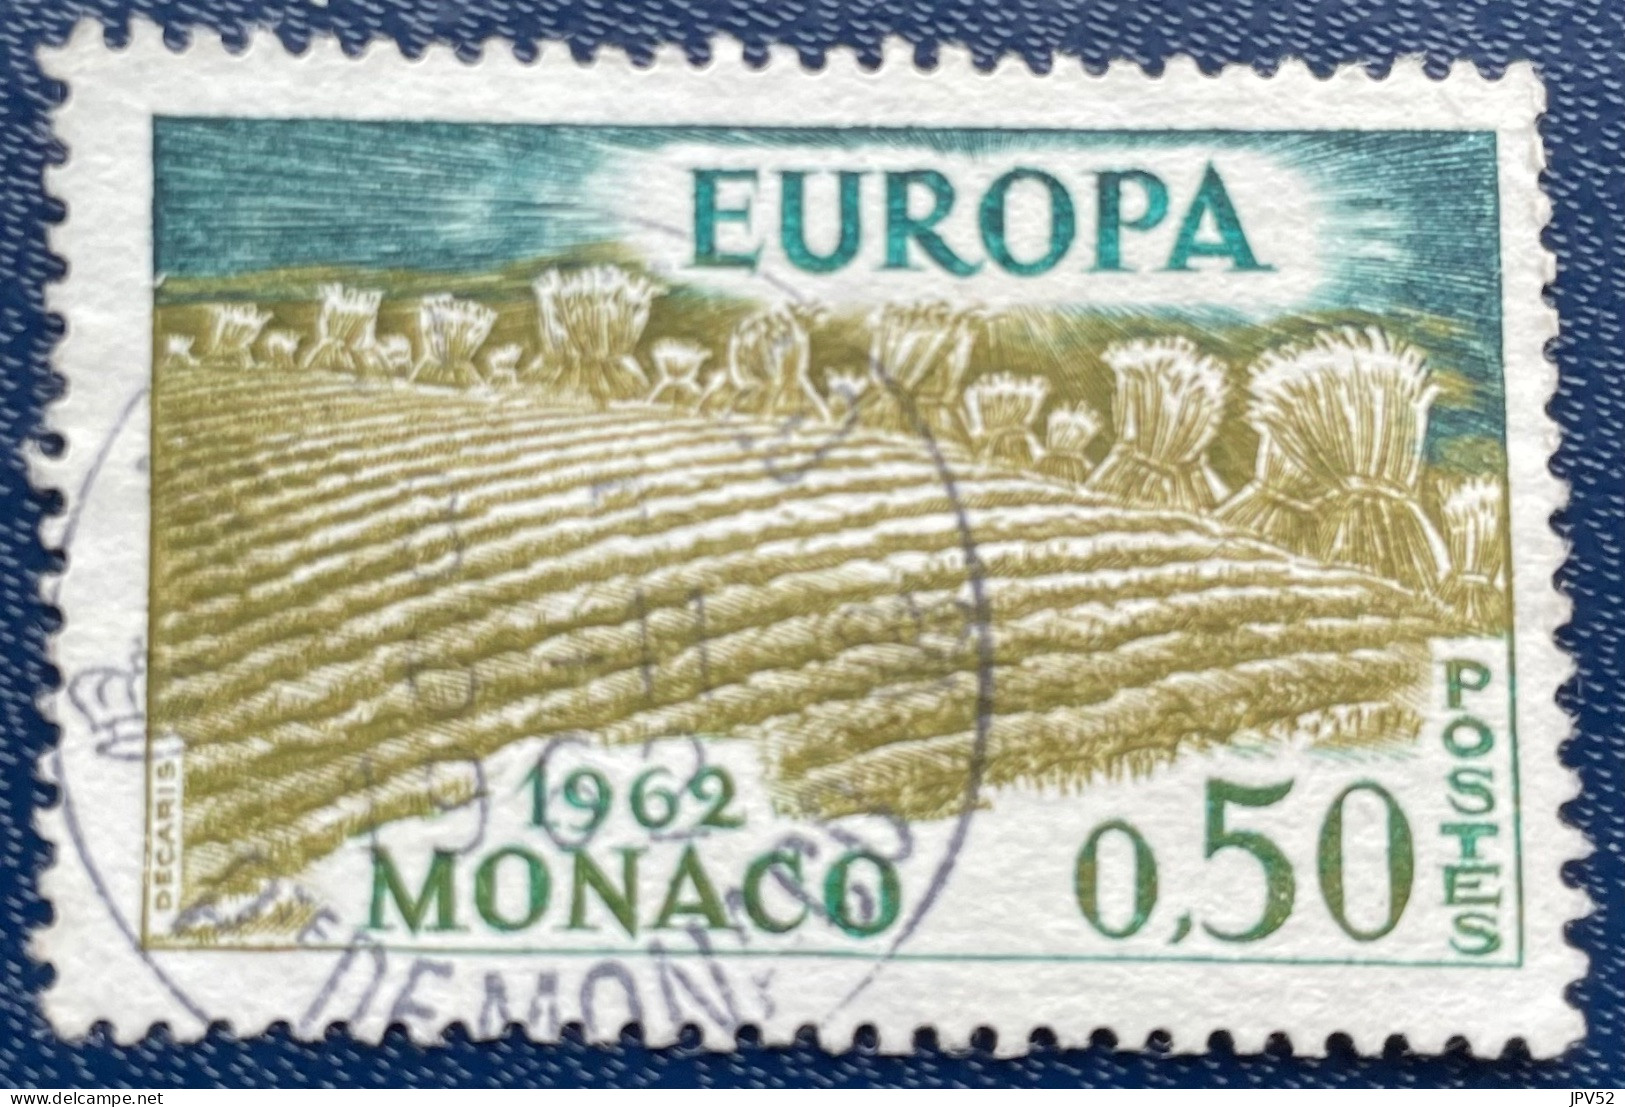 Monaco - C4/52 - 1962 - (°)used - Michel 696 - Europa - Usati